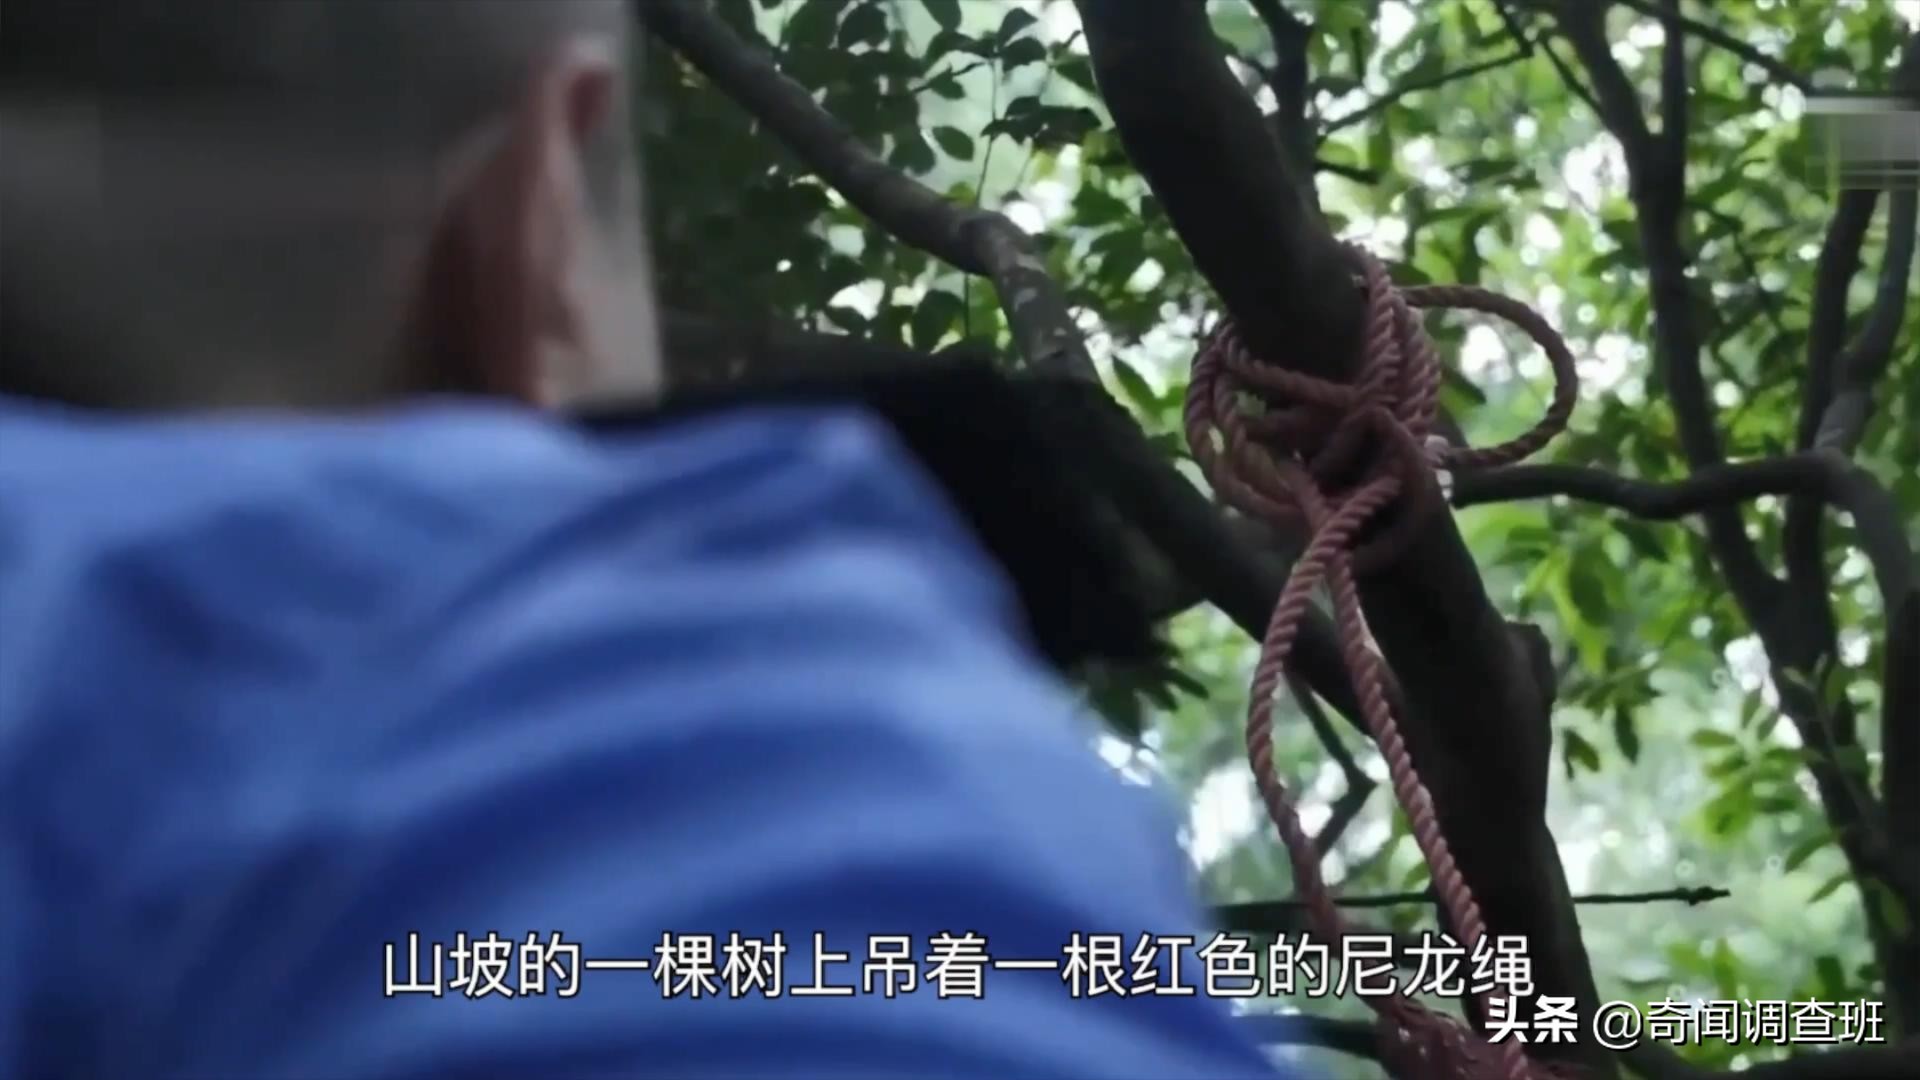 2009年，深圳一景区里惊现男性遗骸，死者双手被绑，身份成谜